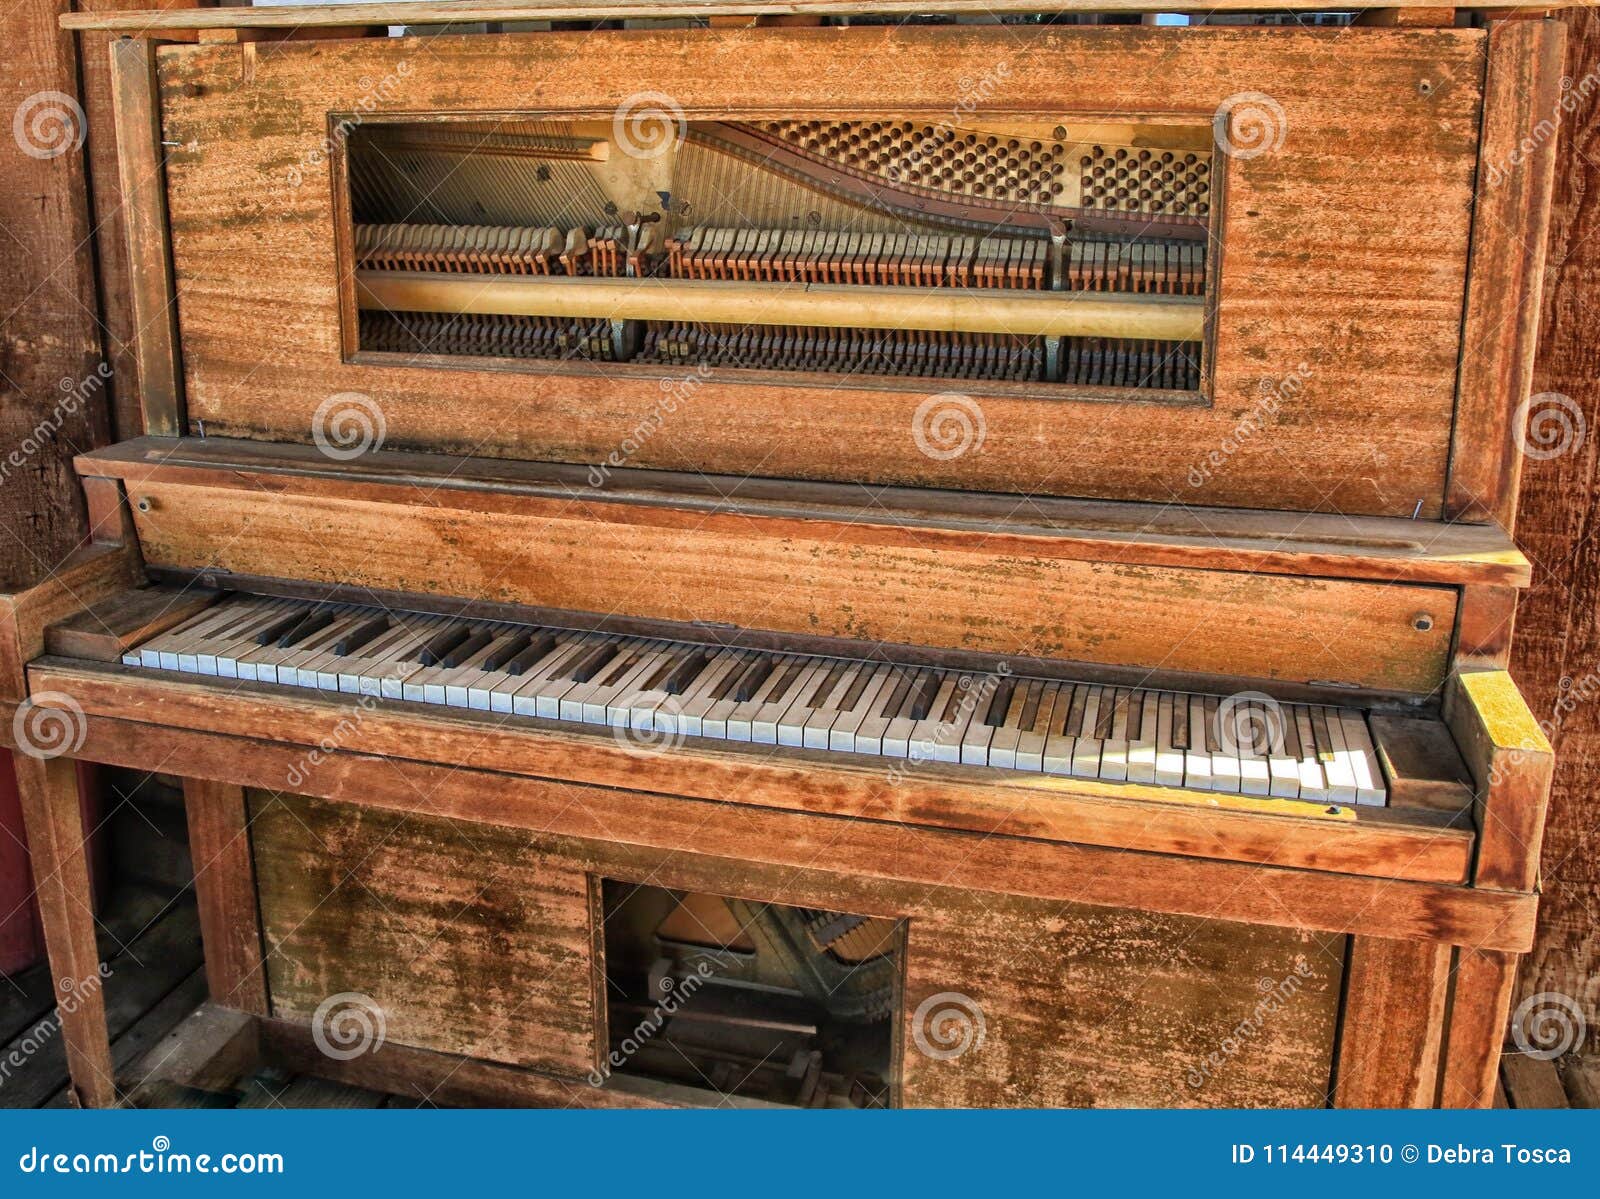 Juramento contaminación Mujer Vintage antiguo del piano foto de archivo. Imagen de viejo - 114449310